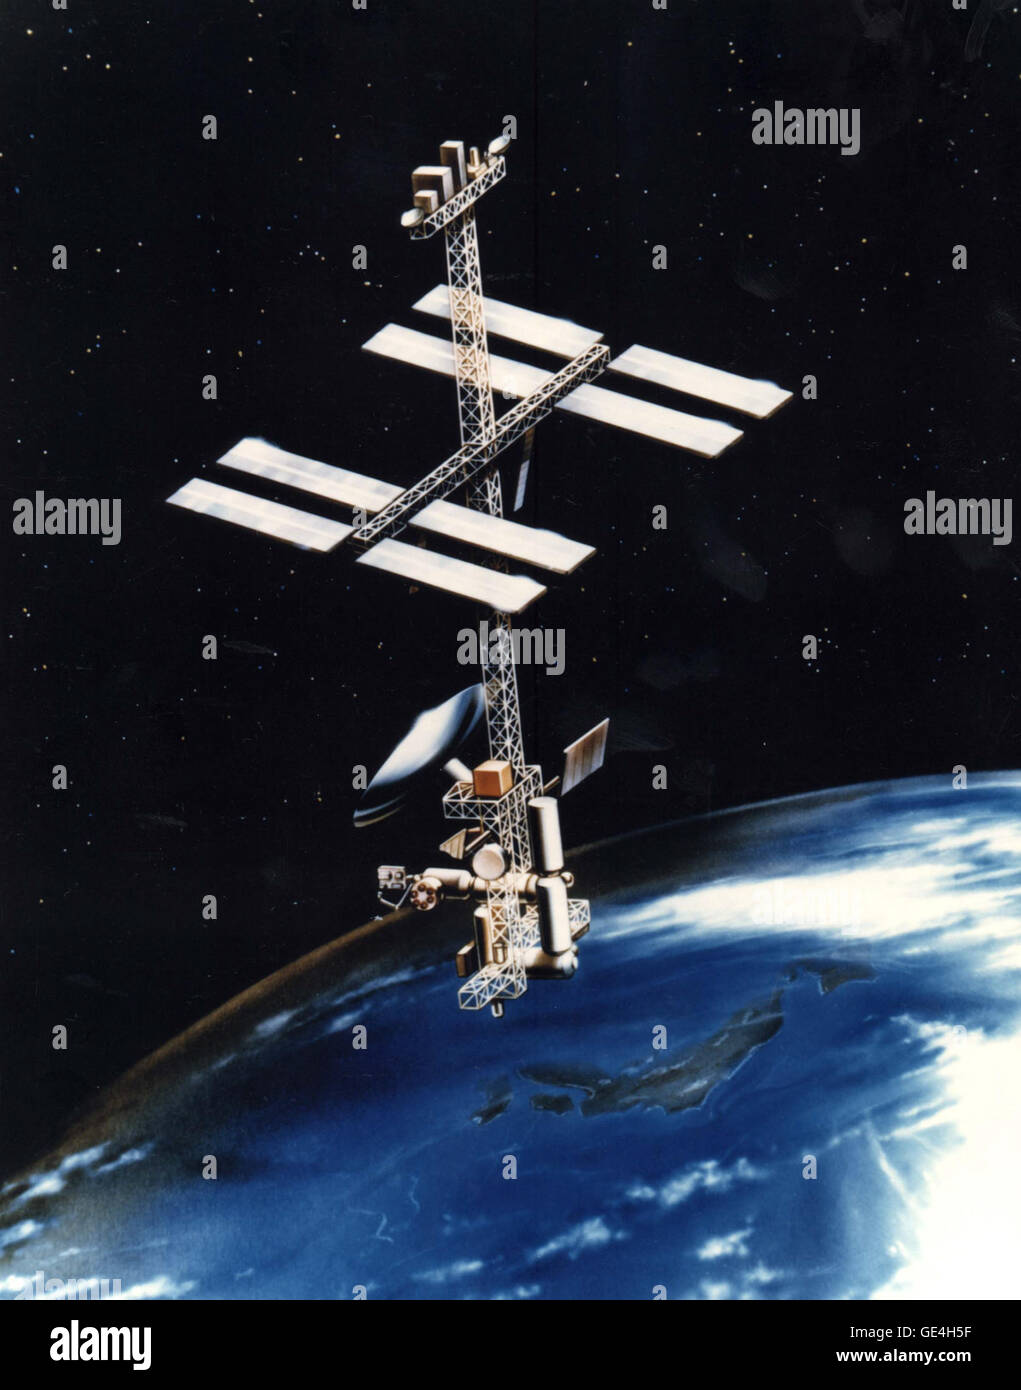 Dies ist eine künstlerische Darstellung der vorgeschlagenen "Power Tower" Raumstation Konfiguration, gezeigt mit dem japanisches Experiment-Modul befestigt. Dieses Modell und einige andere wurden untersucht, vor der Entscheidung über die Raumstation Freedom-Struktur, die später zugunsten der internationalen Raumstation ISS aufgegeben wurde. Stockfoto